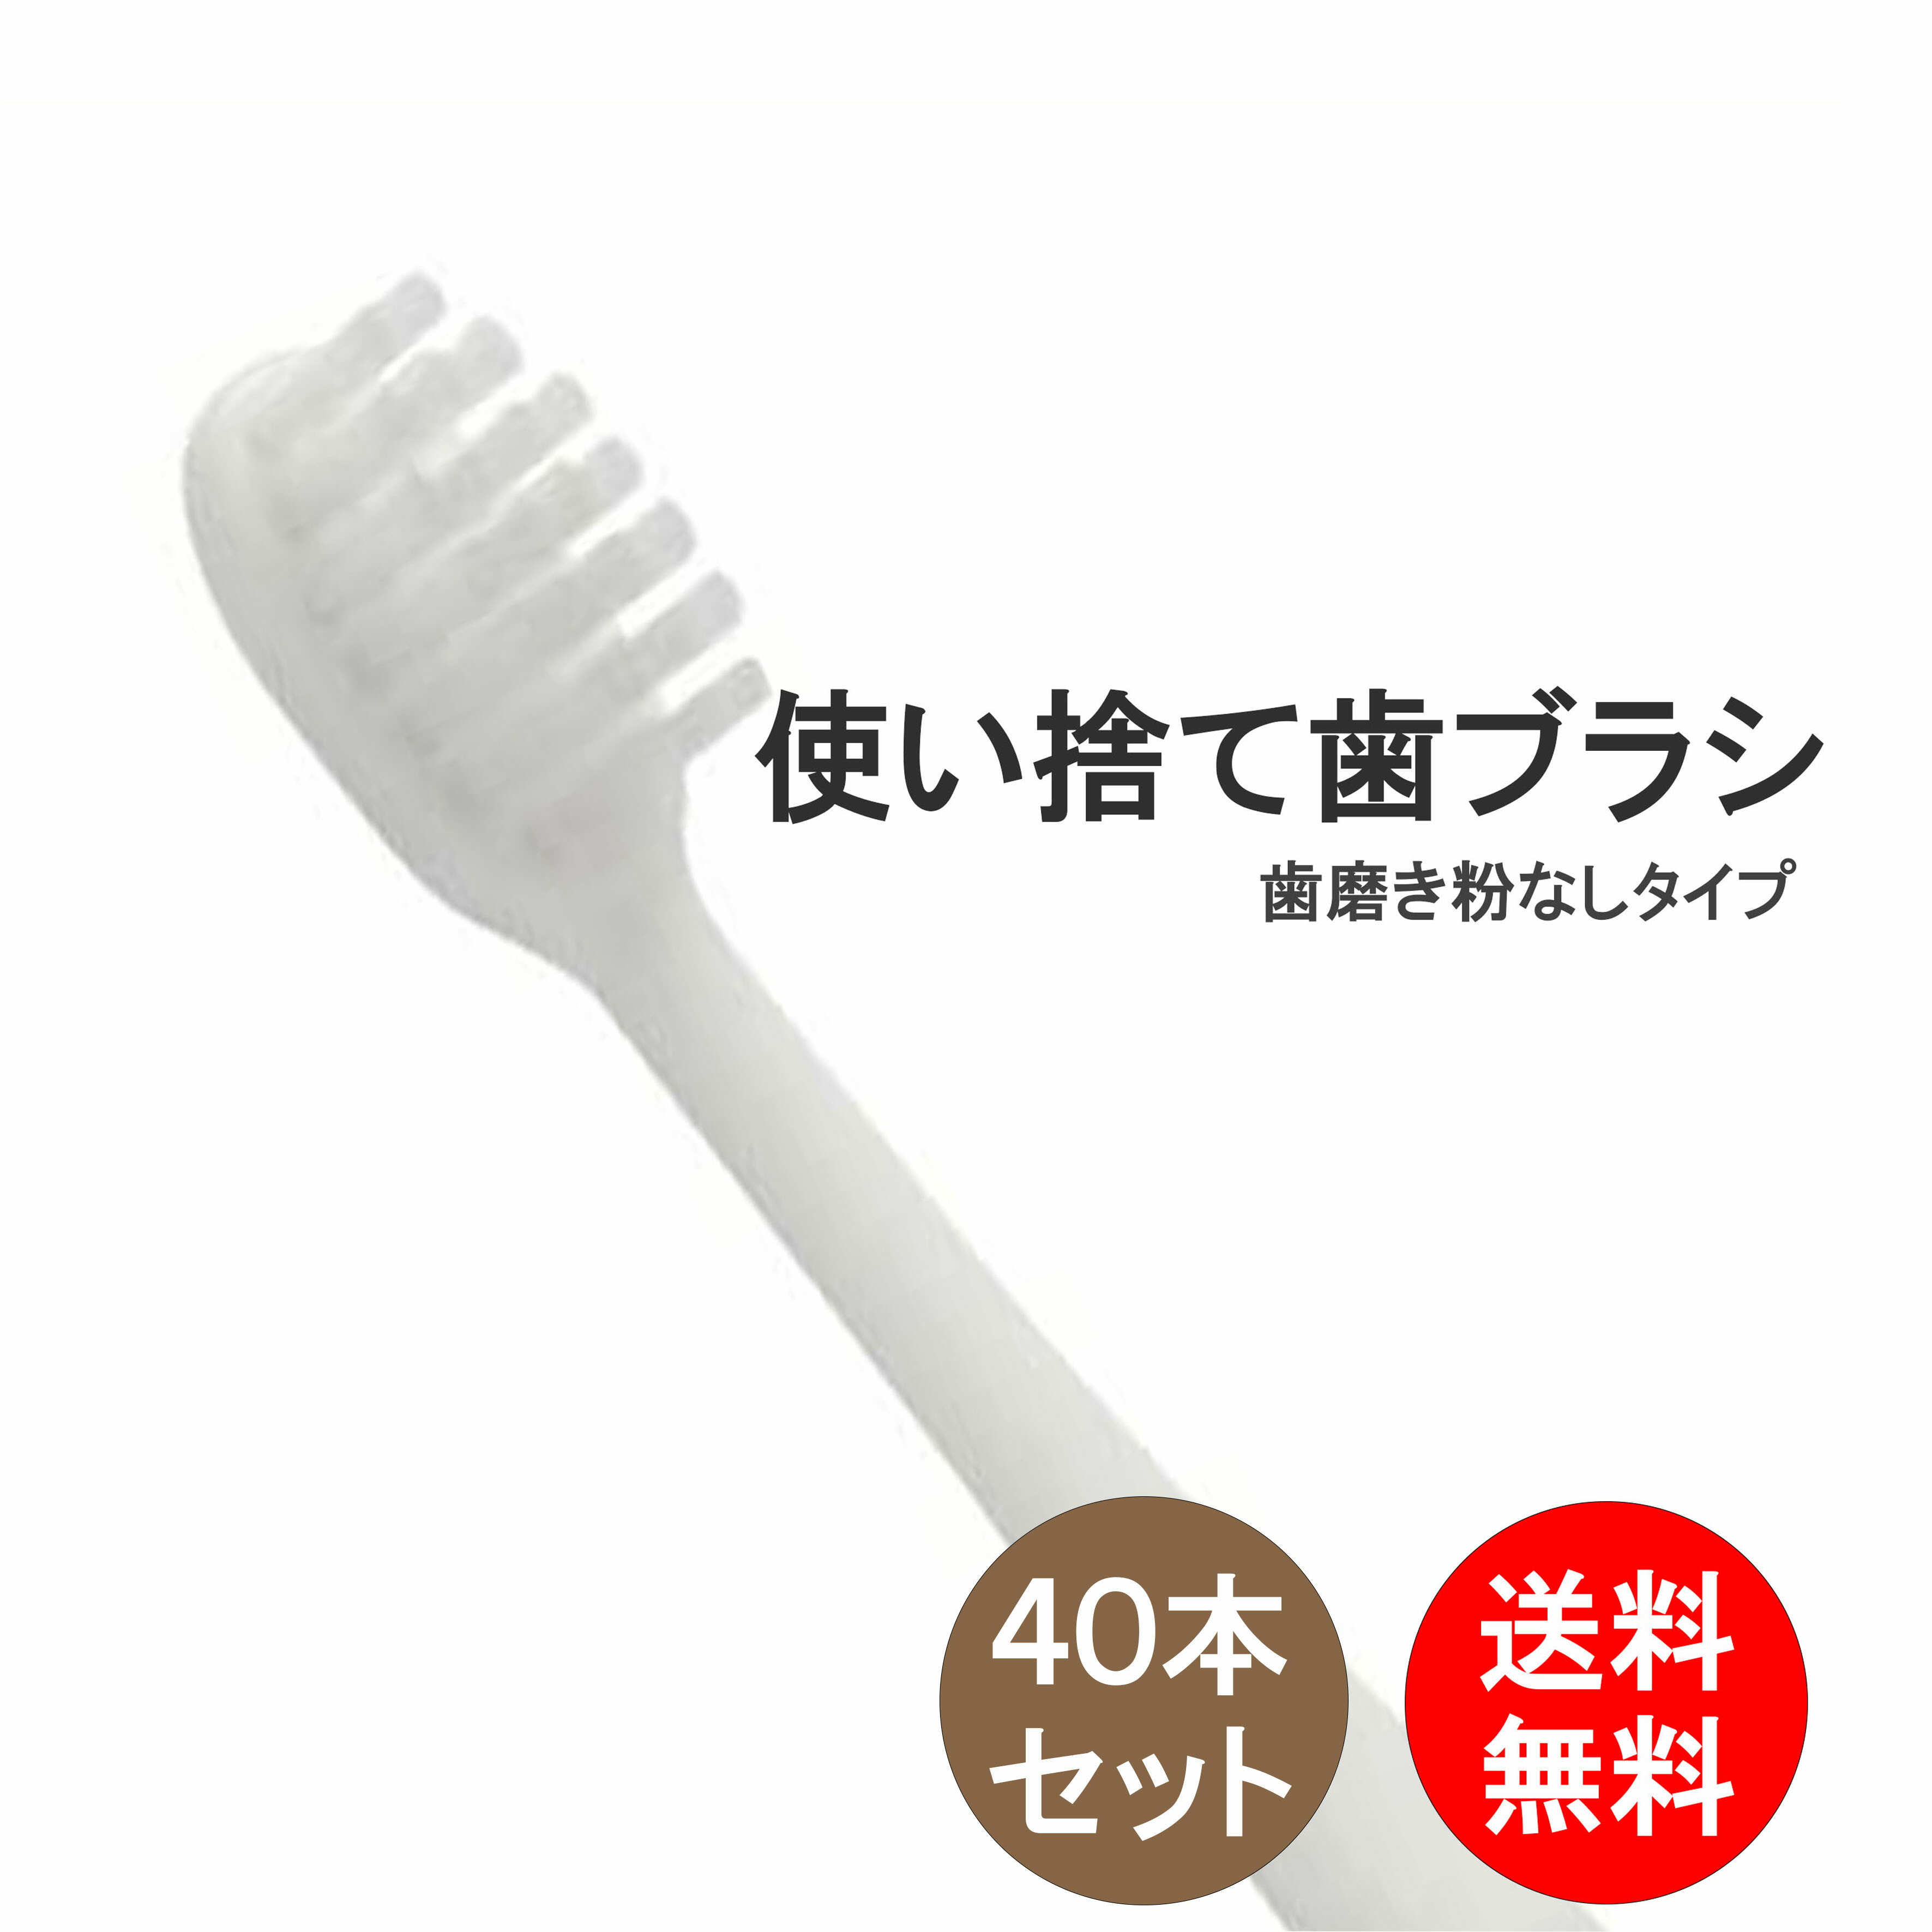 新品 使い捨て歯ブラシ アメニティ 携帯便利 40本セット - 歯ブラシ